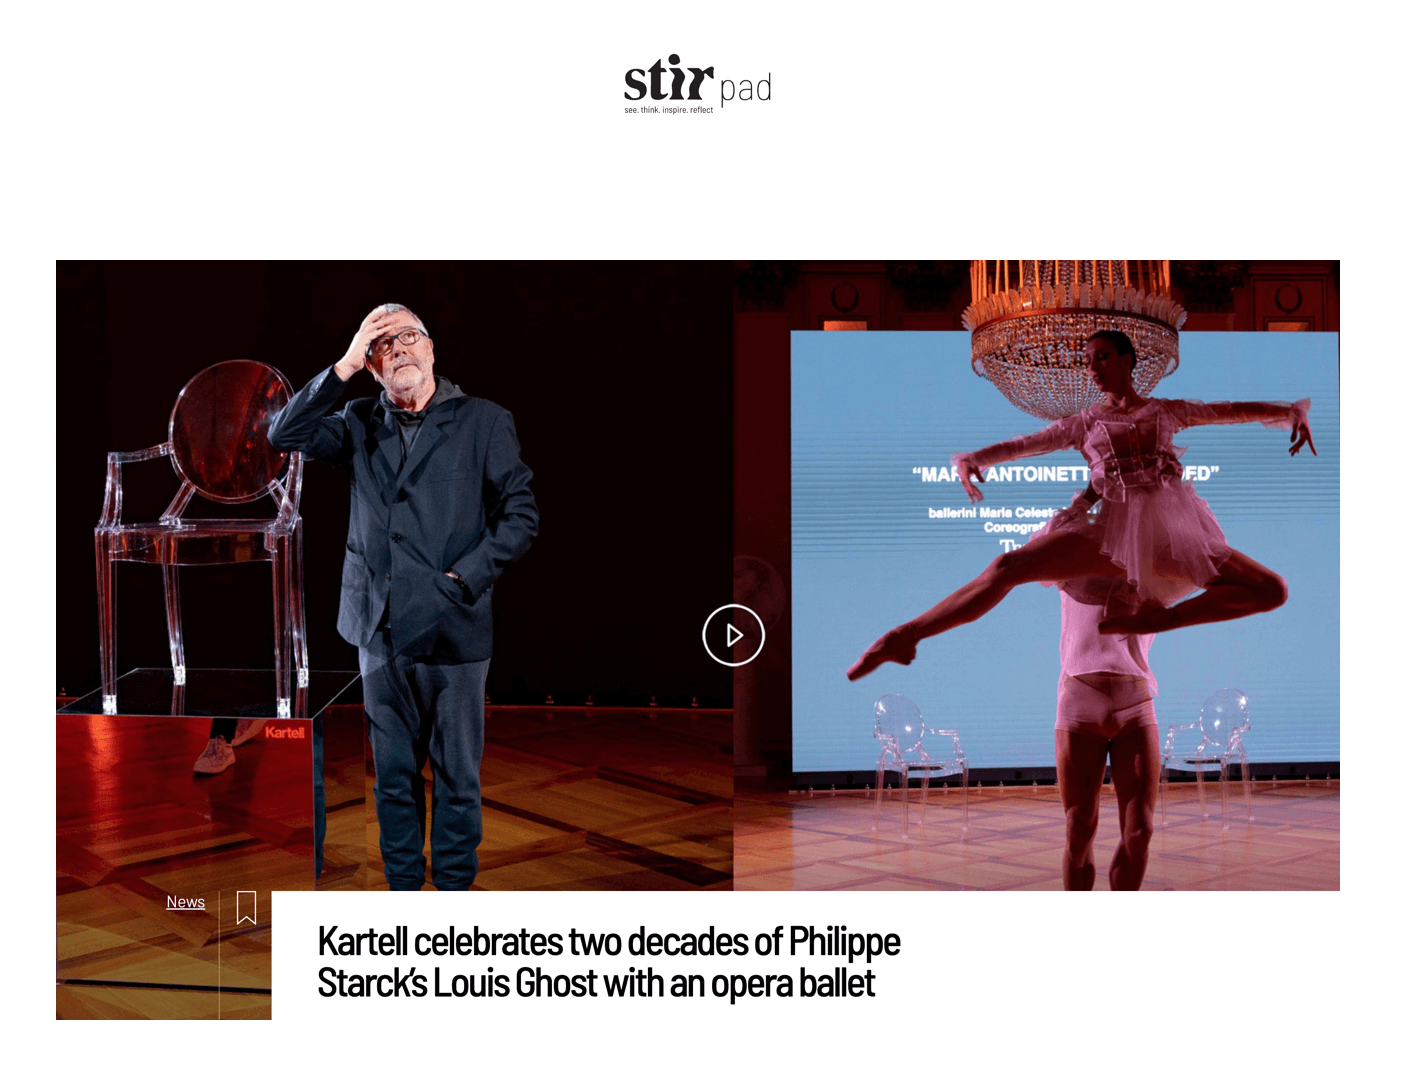 Kartell célèbre les deux décennies du Louis Ghost de Philippe Starck par un opéra-ballet